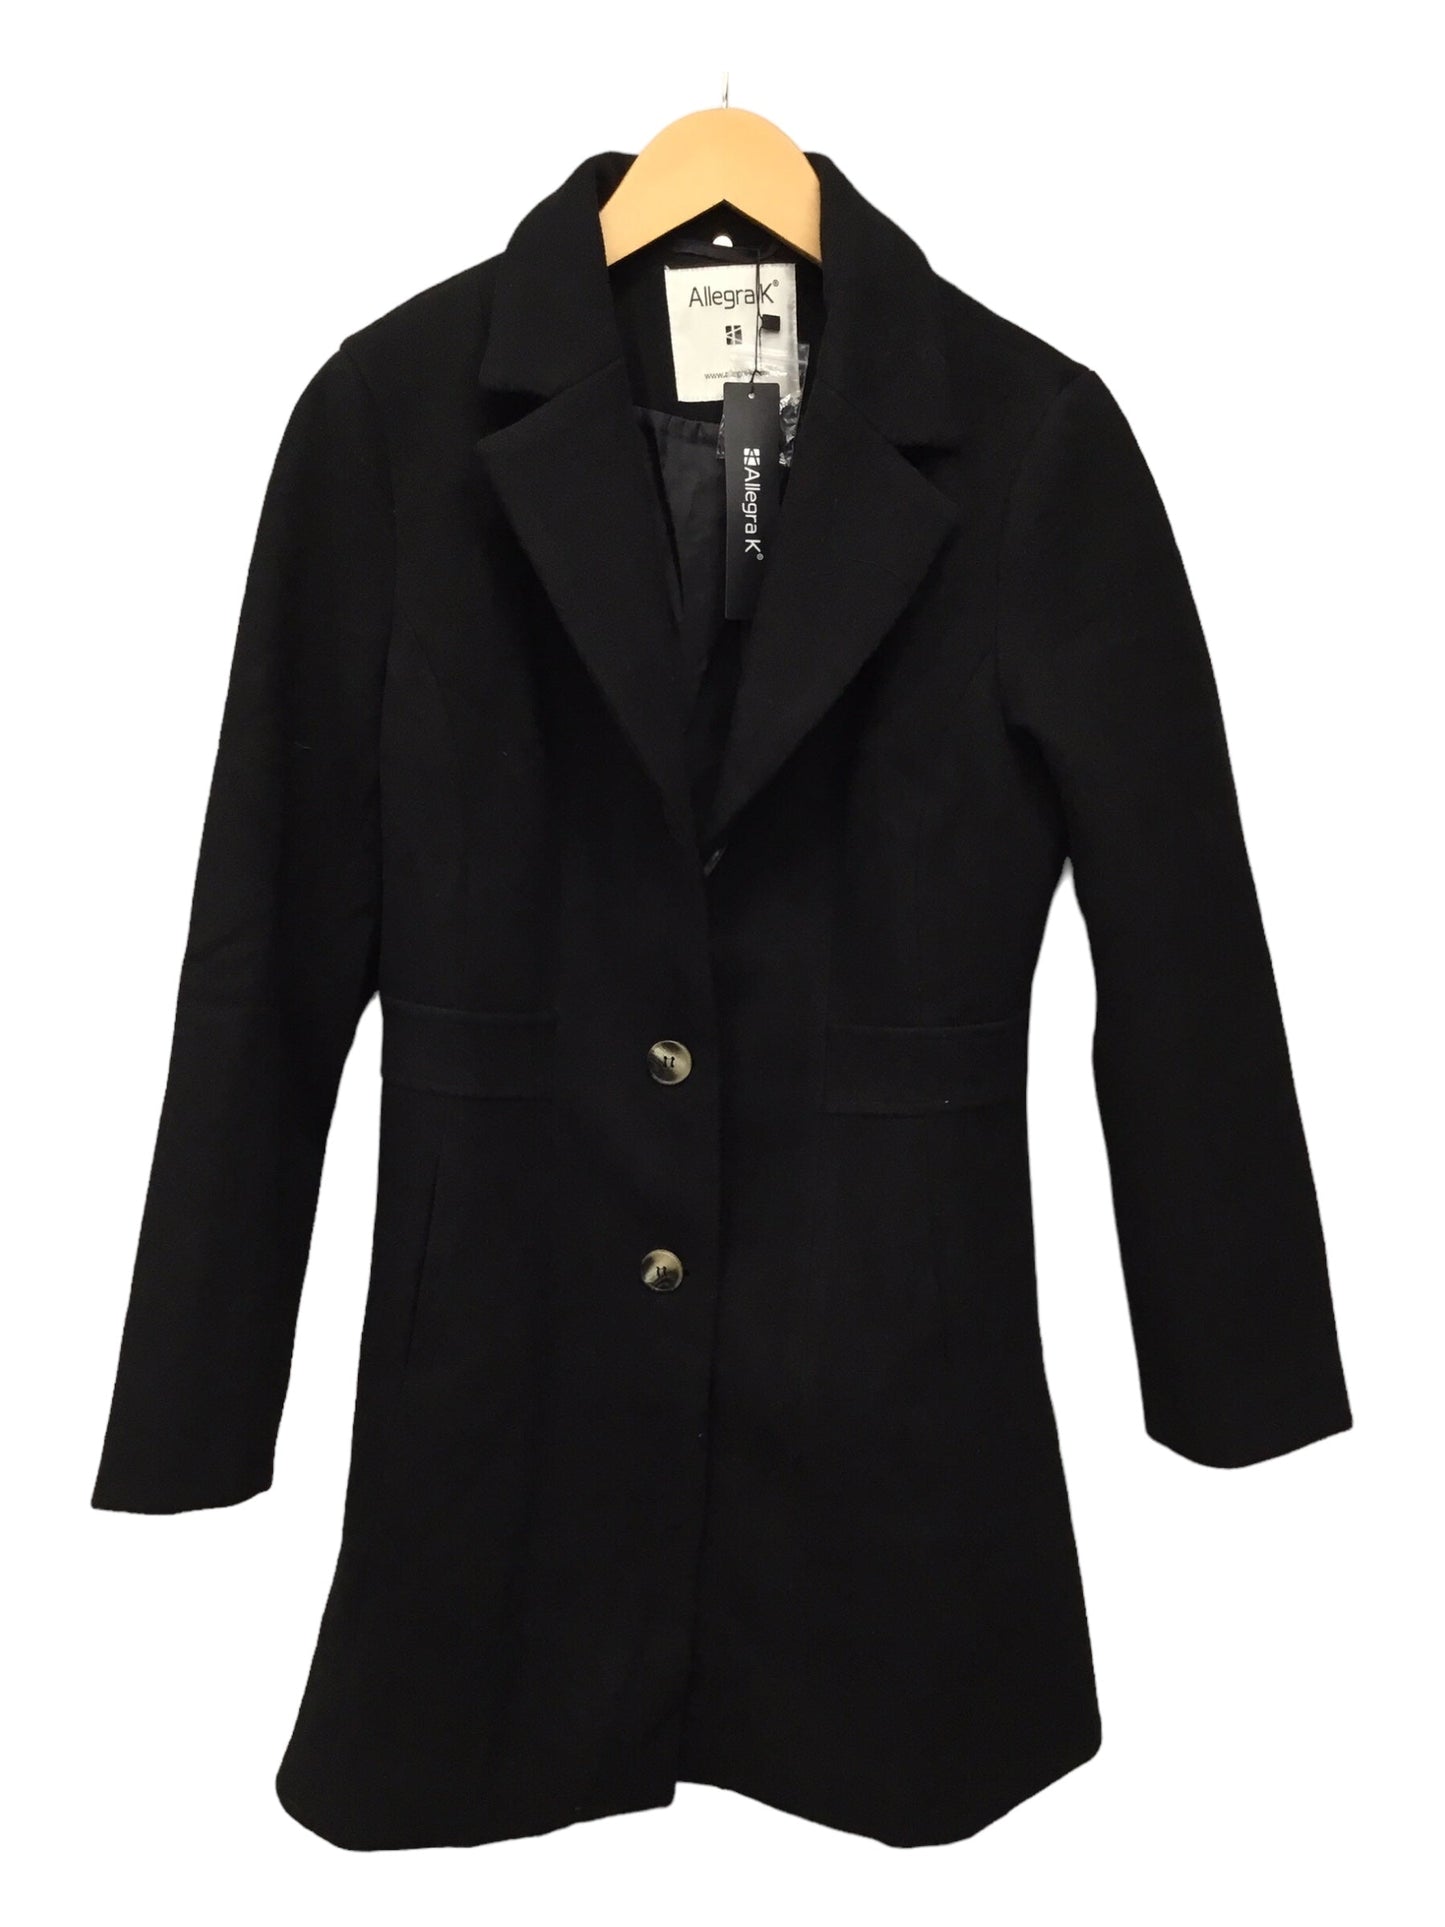 NWT Black Coat Peacoat Allegra K, Size M